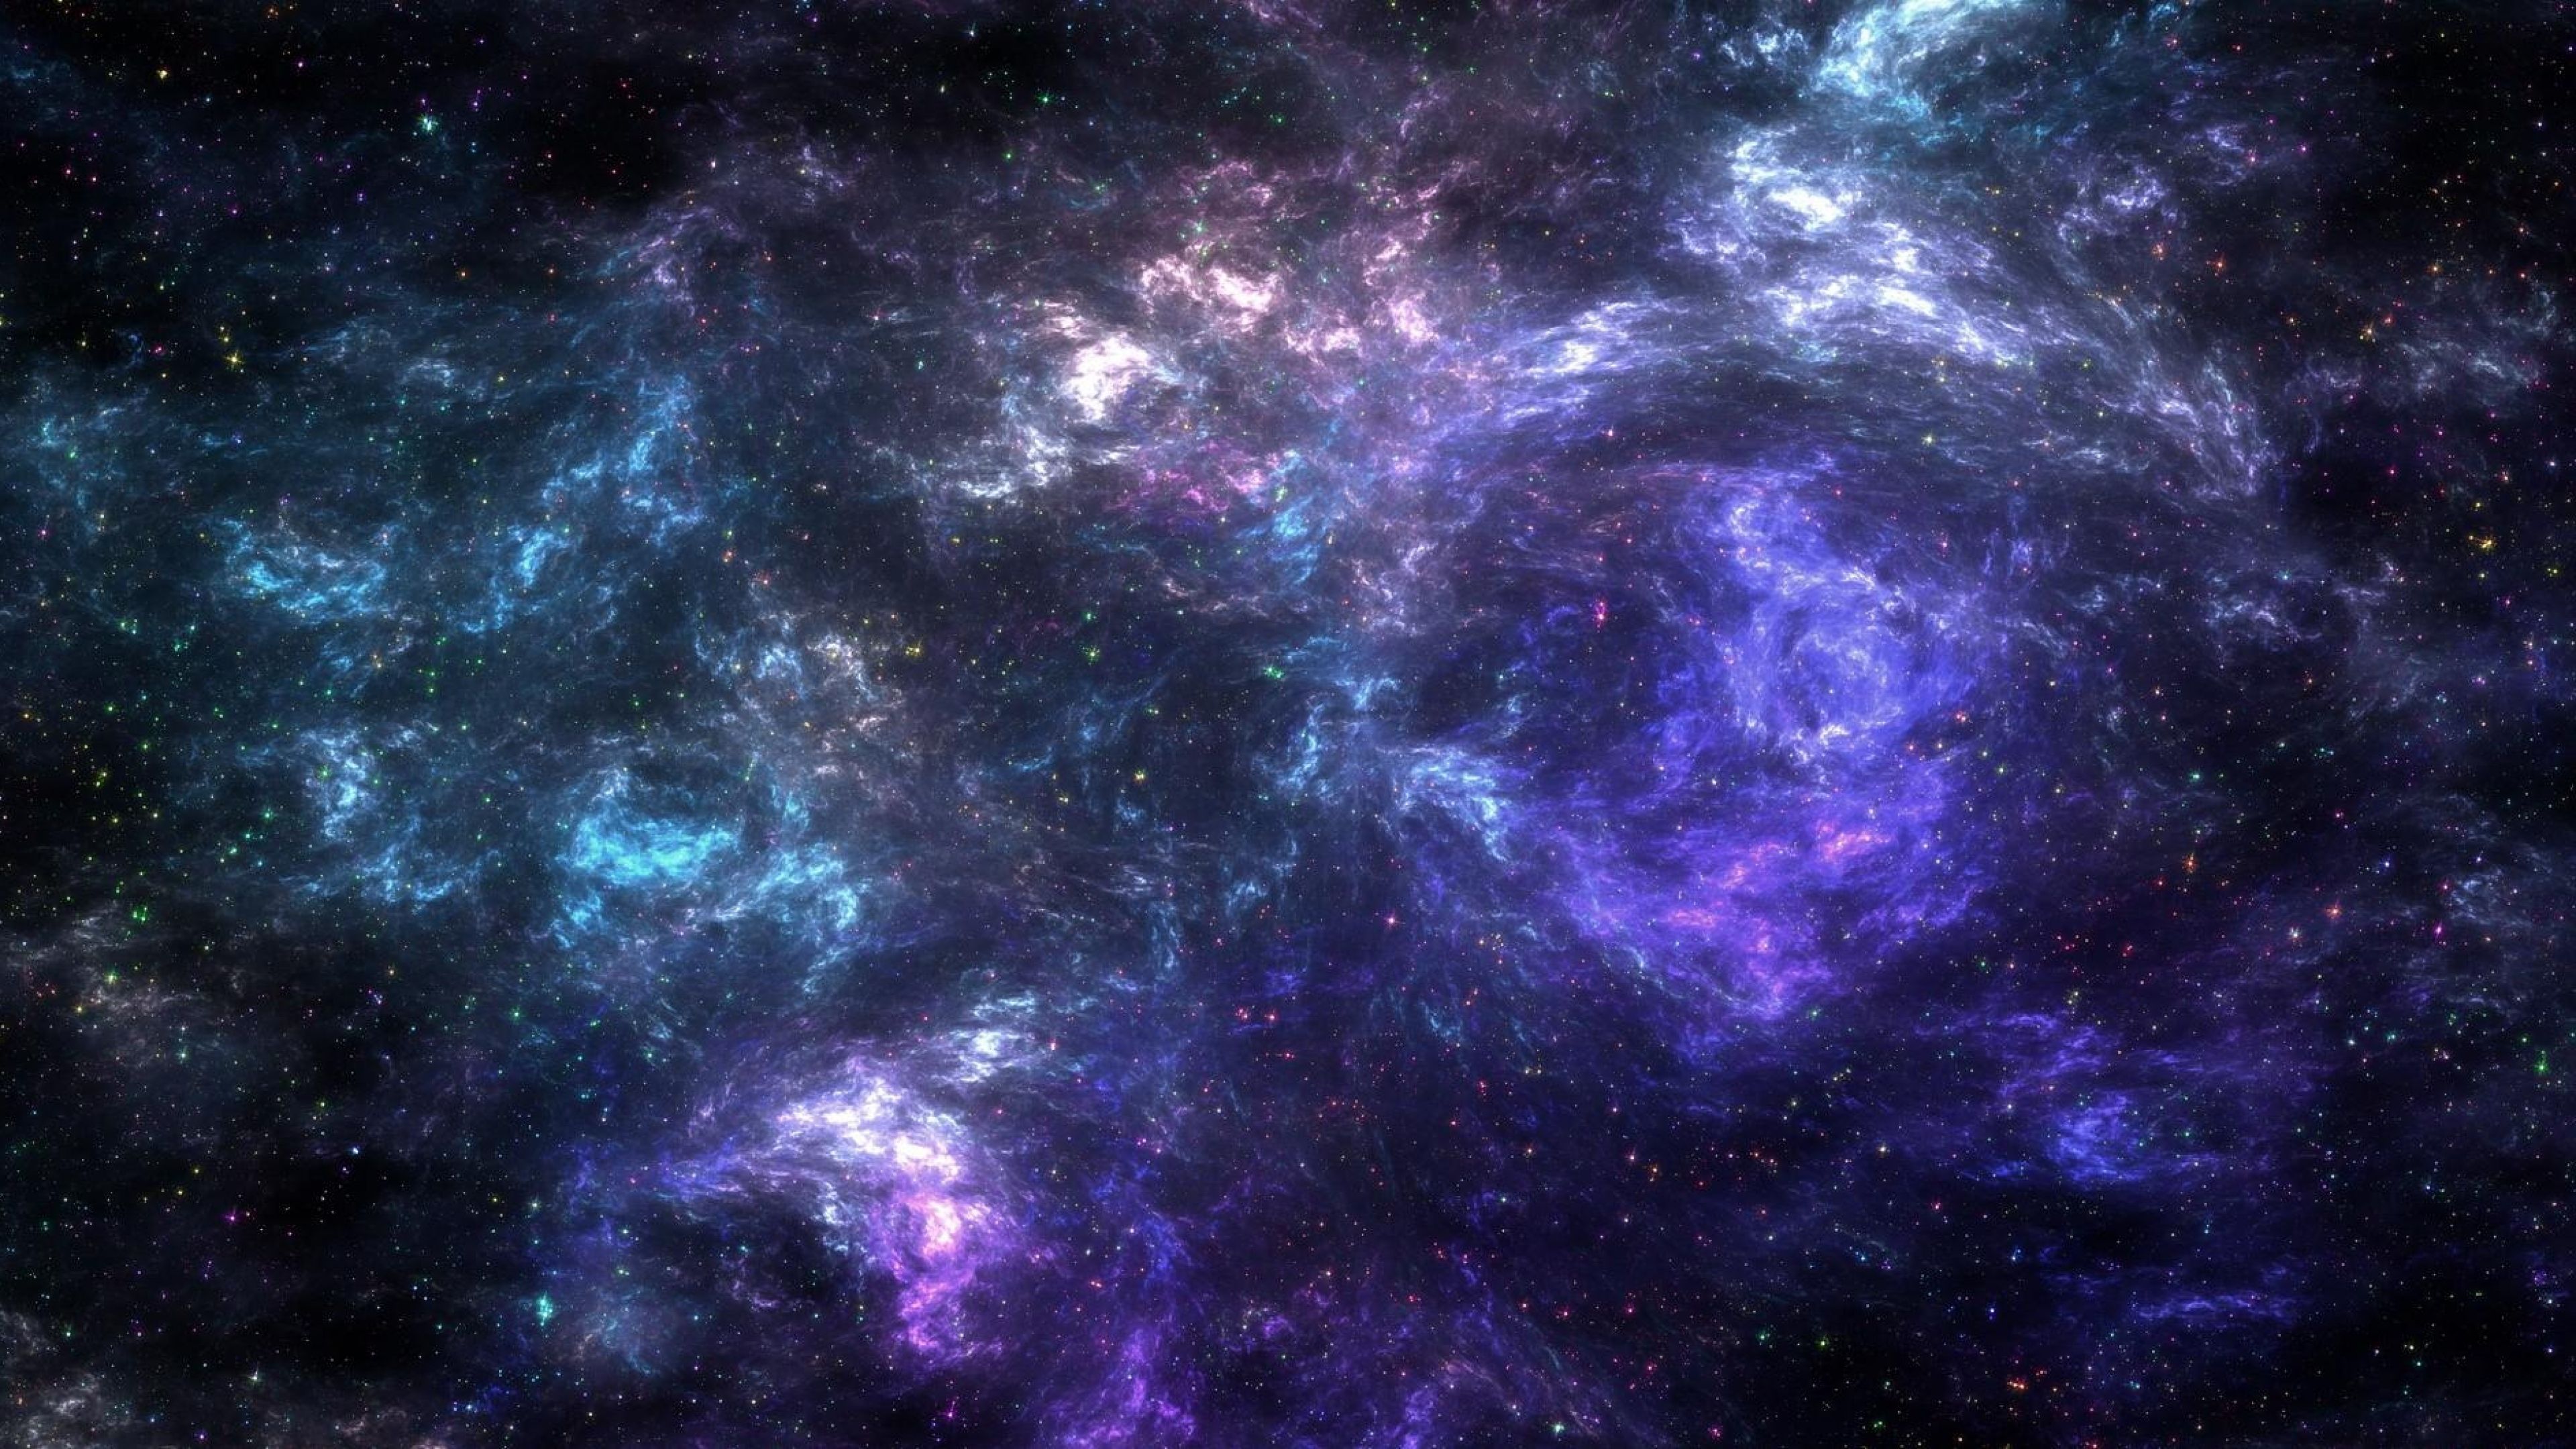 Nếu bạn là một người yêu khoa học và đam mê vũ trụ, thì hãy truy cập ngay hình nền 4K Vệ tinh. Những hình ảnh kỳ vĩ và rực rỡ màu sắc sẽ khiến bạn cảm thấy như đang thám hiểm qua các hành tinh xa xôi. Bạn sẽ được trải nghiệm cảm giác như đang sống giữa vũ trụ rộng lớn.